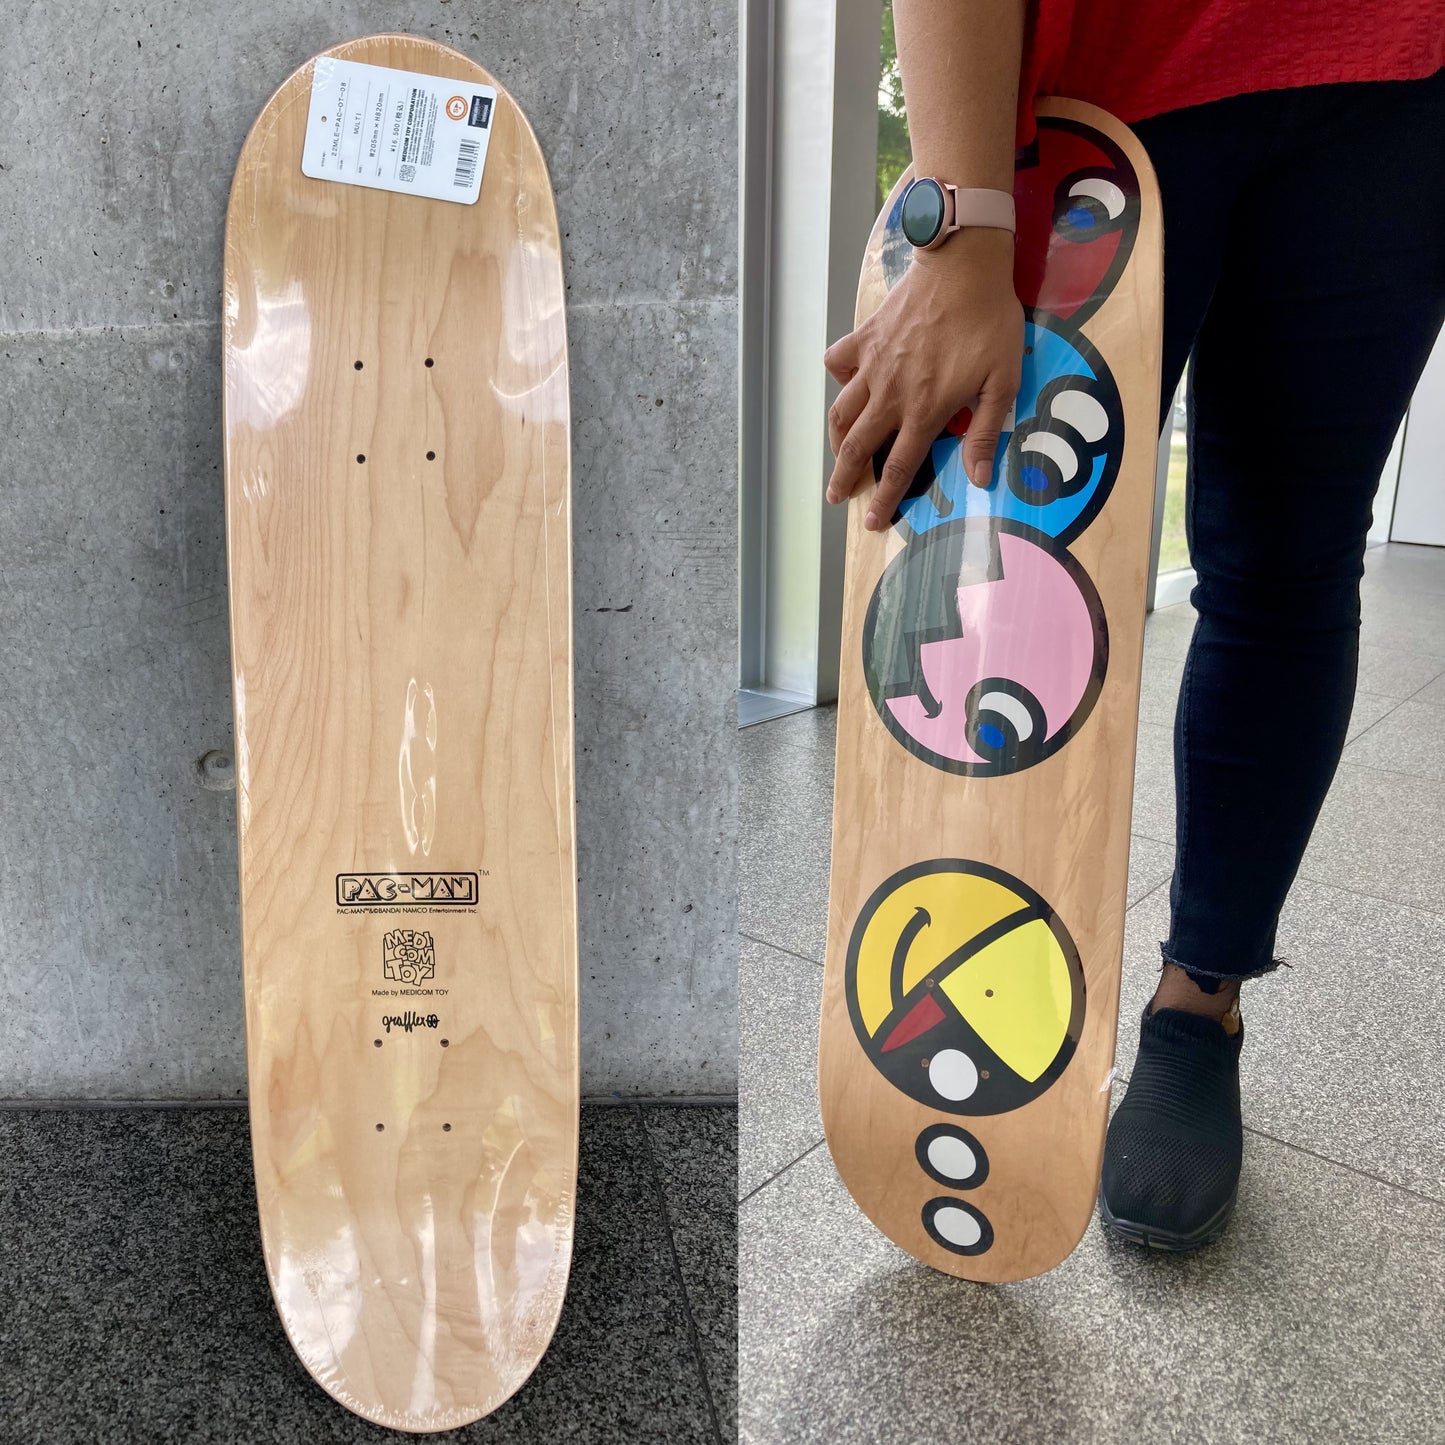 PAC-MAN X GRAFFLEX 02 Skateboard Deck by Medicom Toy